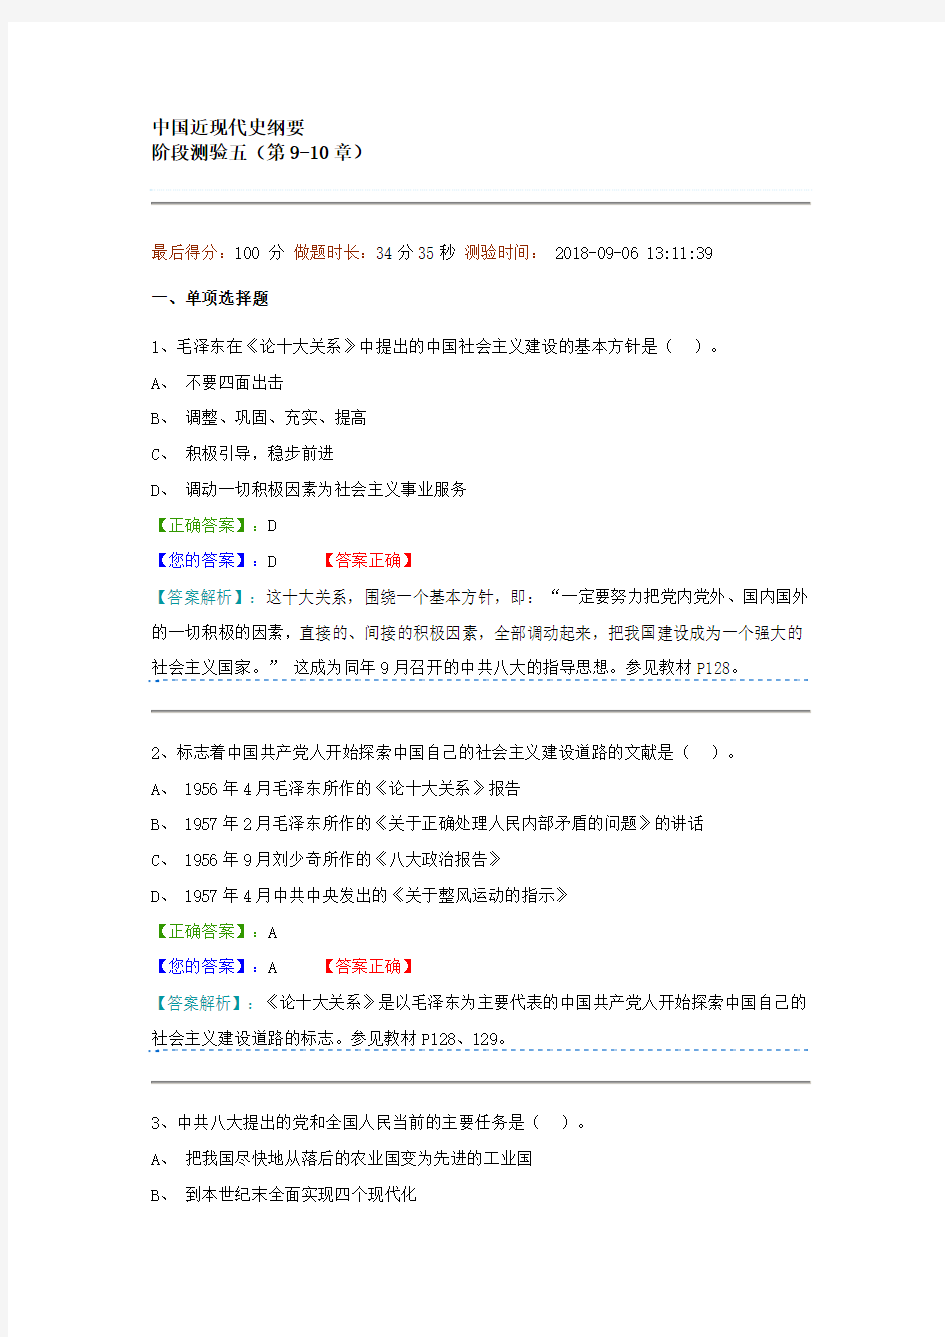 中国近现代史纲要阶段测验二(第9-10章)